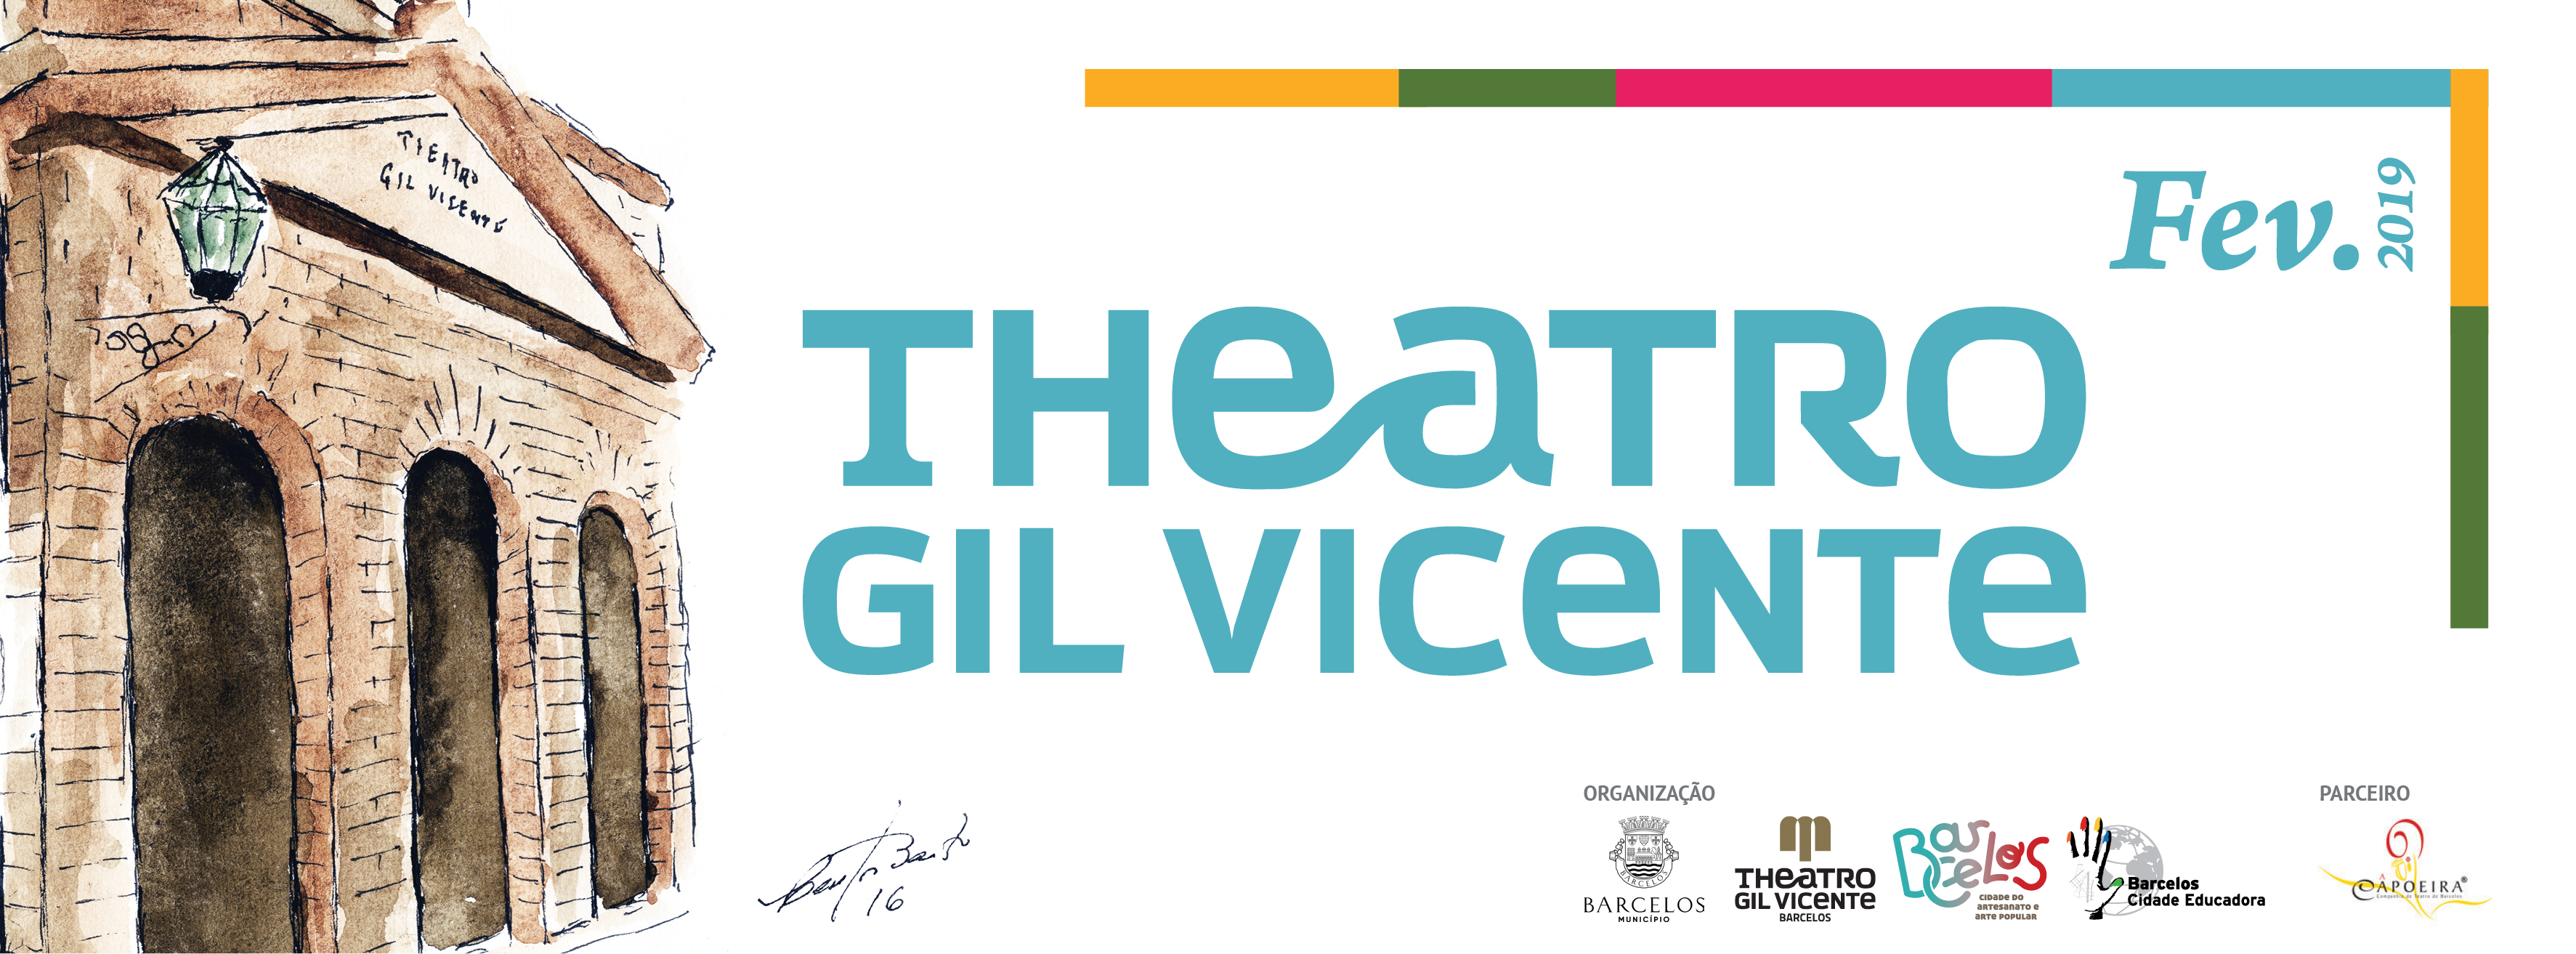 Música e teatro marcam programação cultural do mês de fevereiro do Teatro Gil Vicente